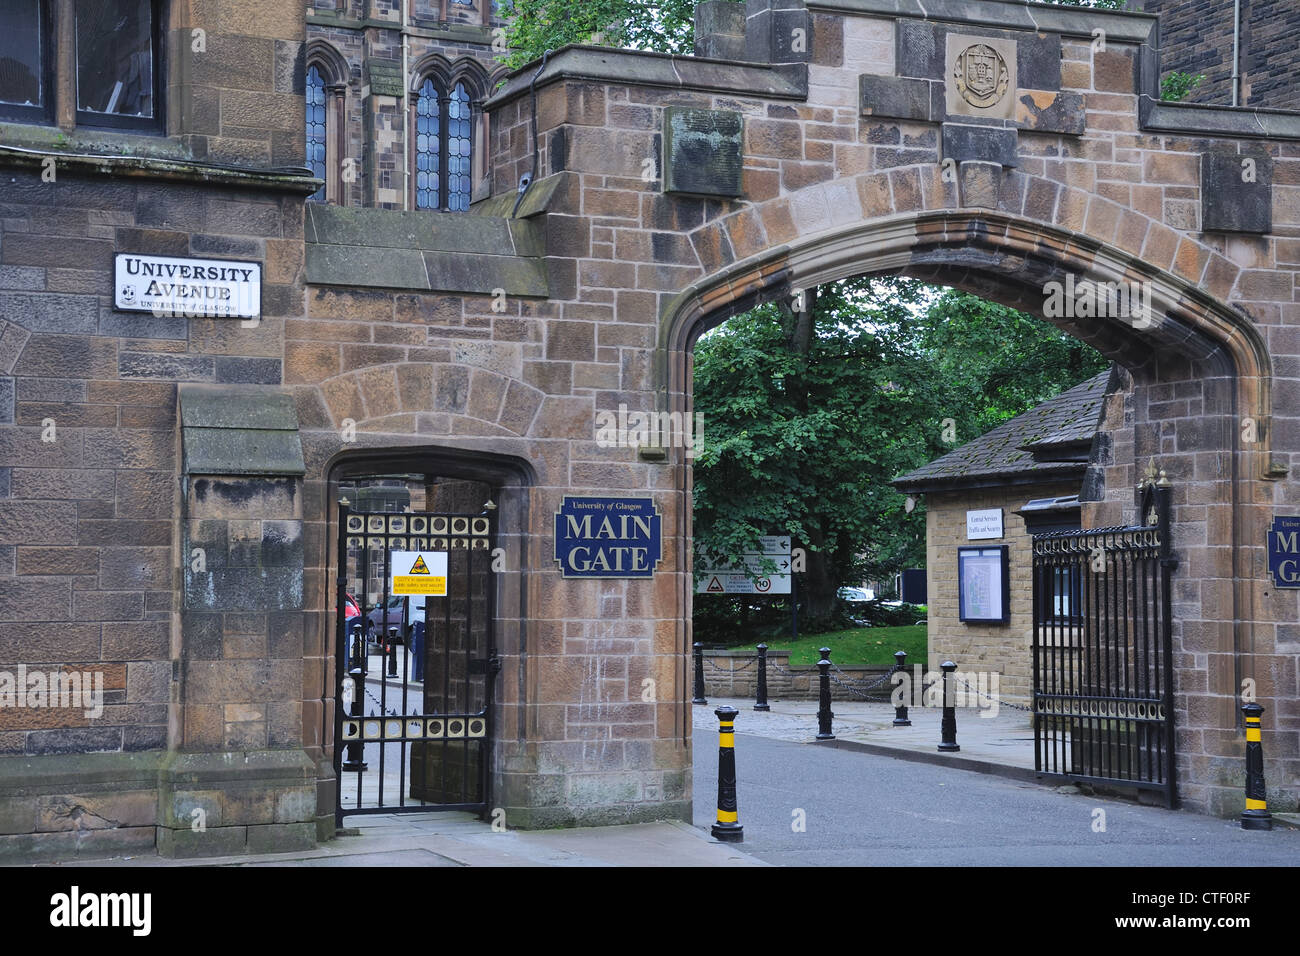 Glasgow university main gate on University Avenue, Scotland, UK Stock Photo